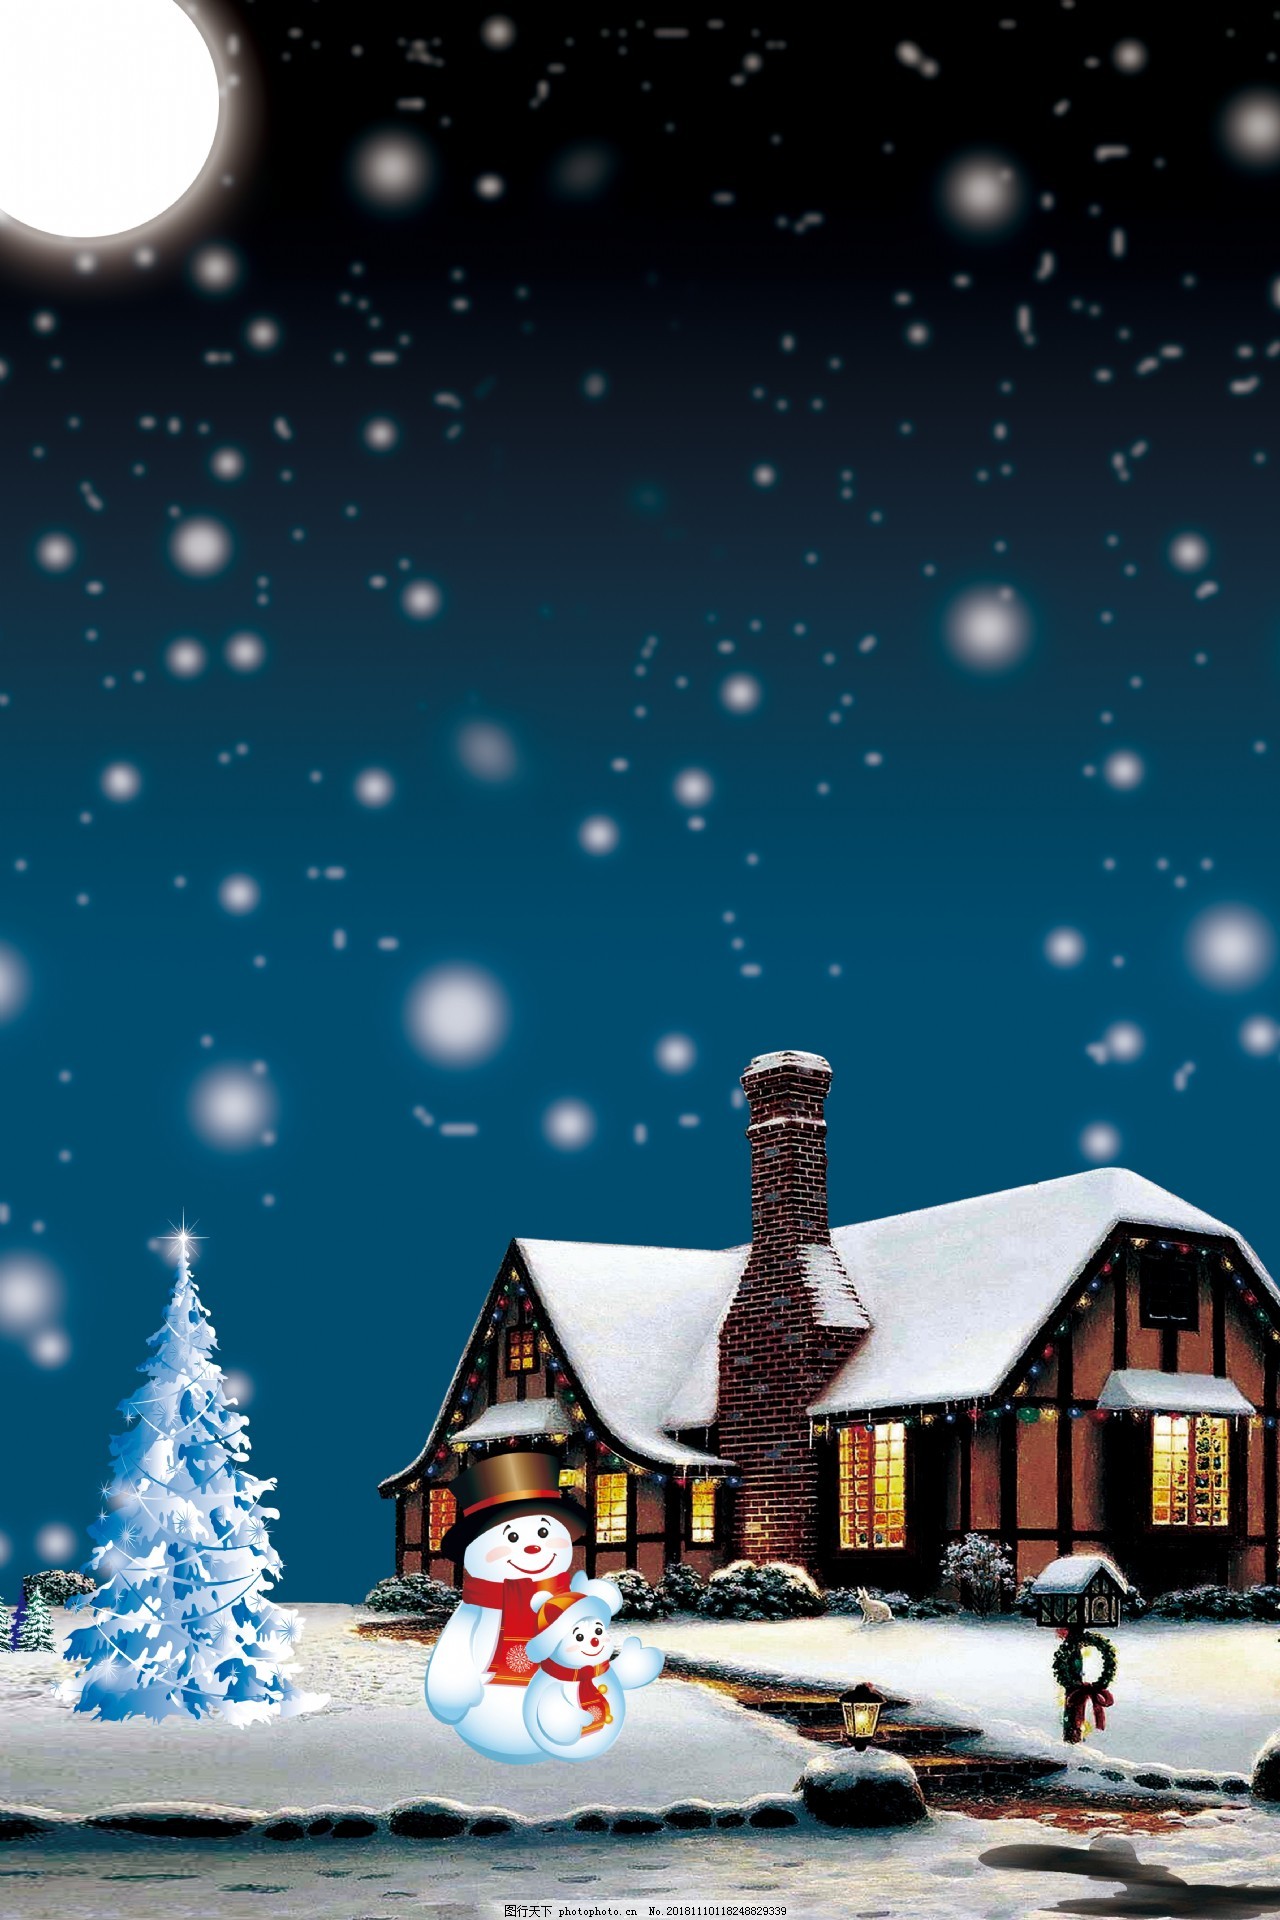 下雪的圣诞节背景素材图片 广告背景 底纹边框 图行天下素材网